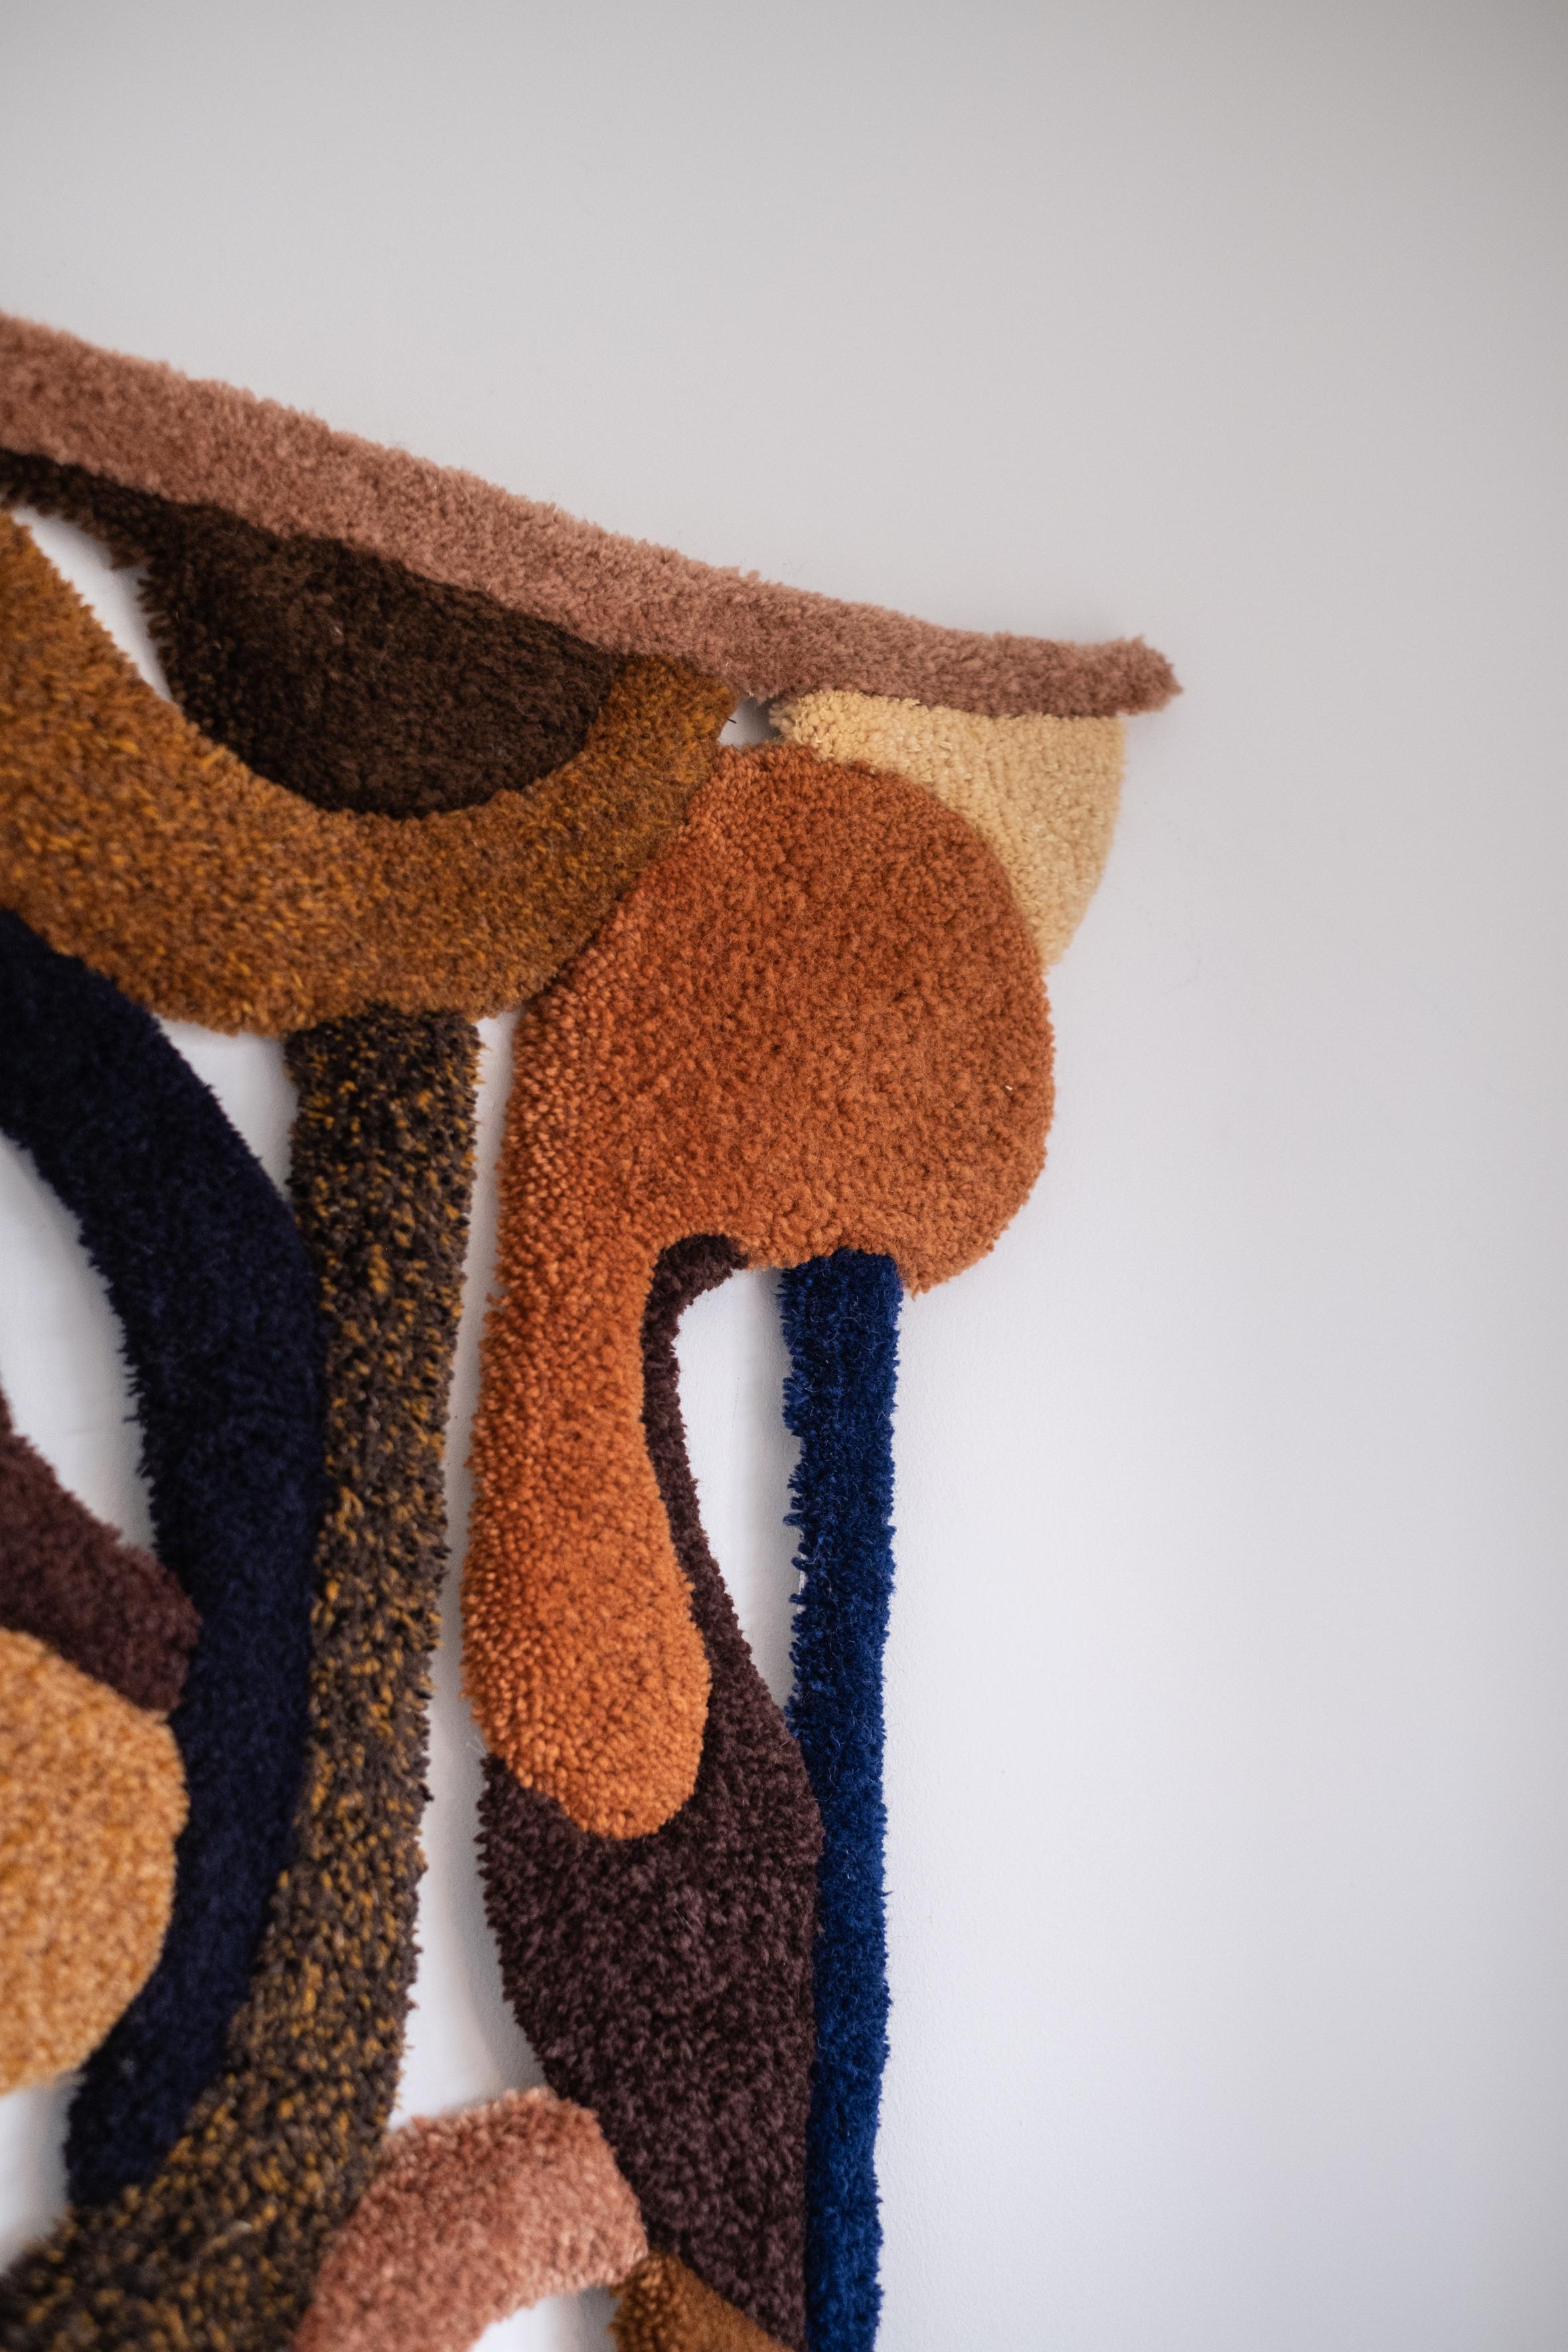 Belgian Opus XLIV Handmade Wool Tapestry by Mira Sohlen